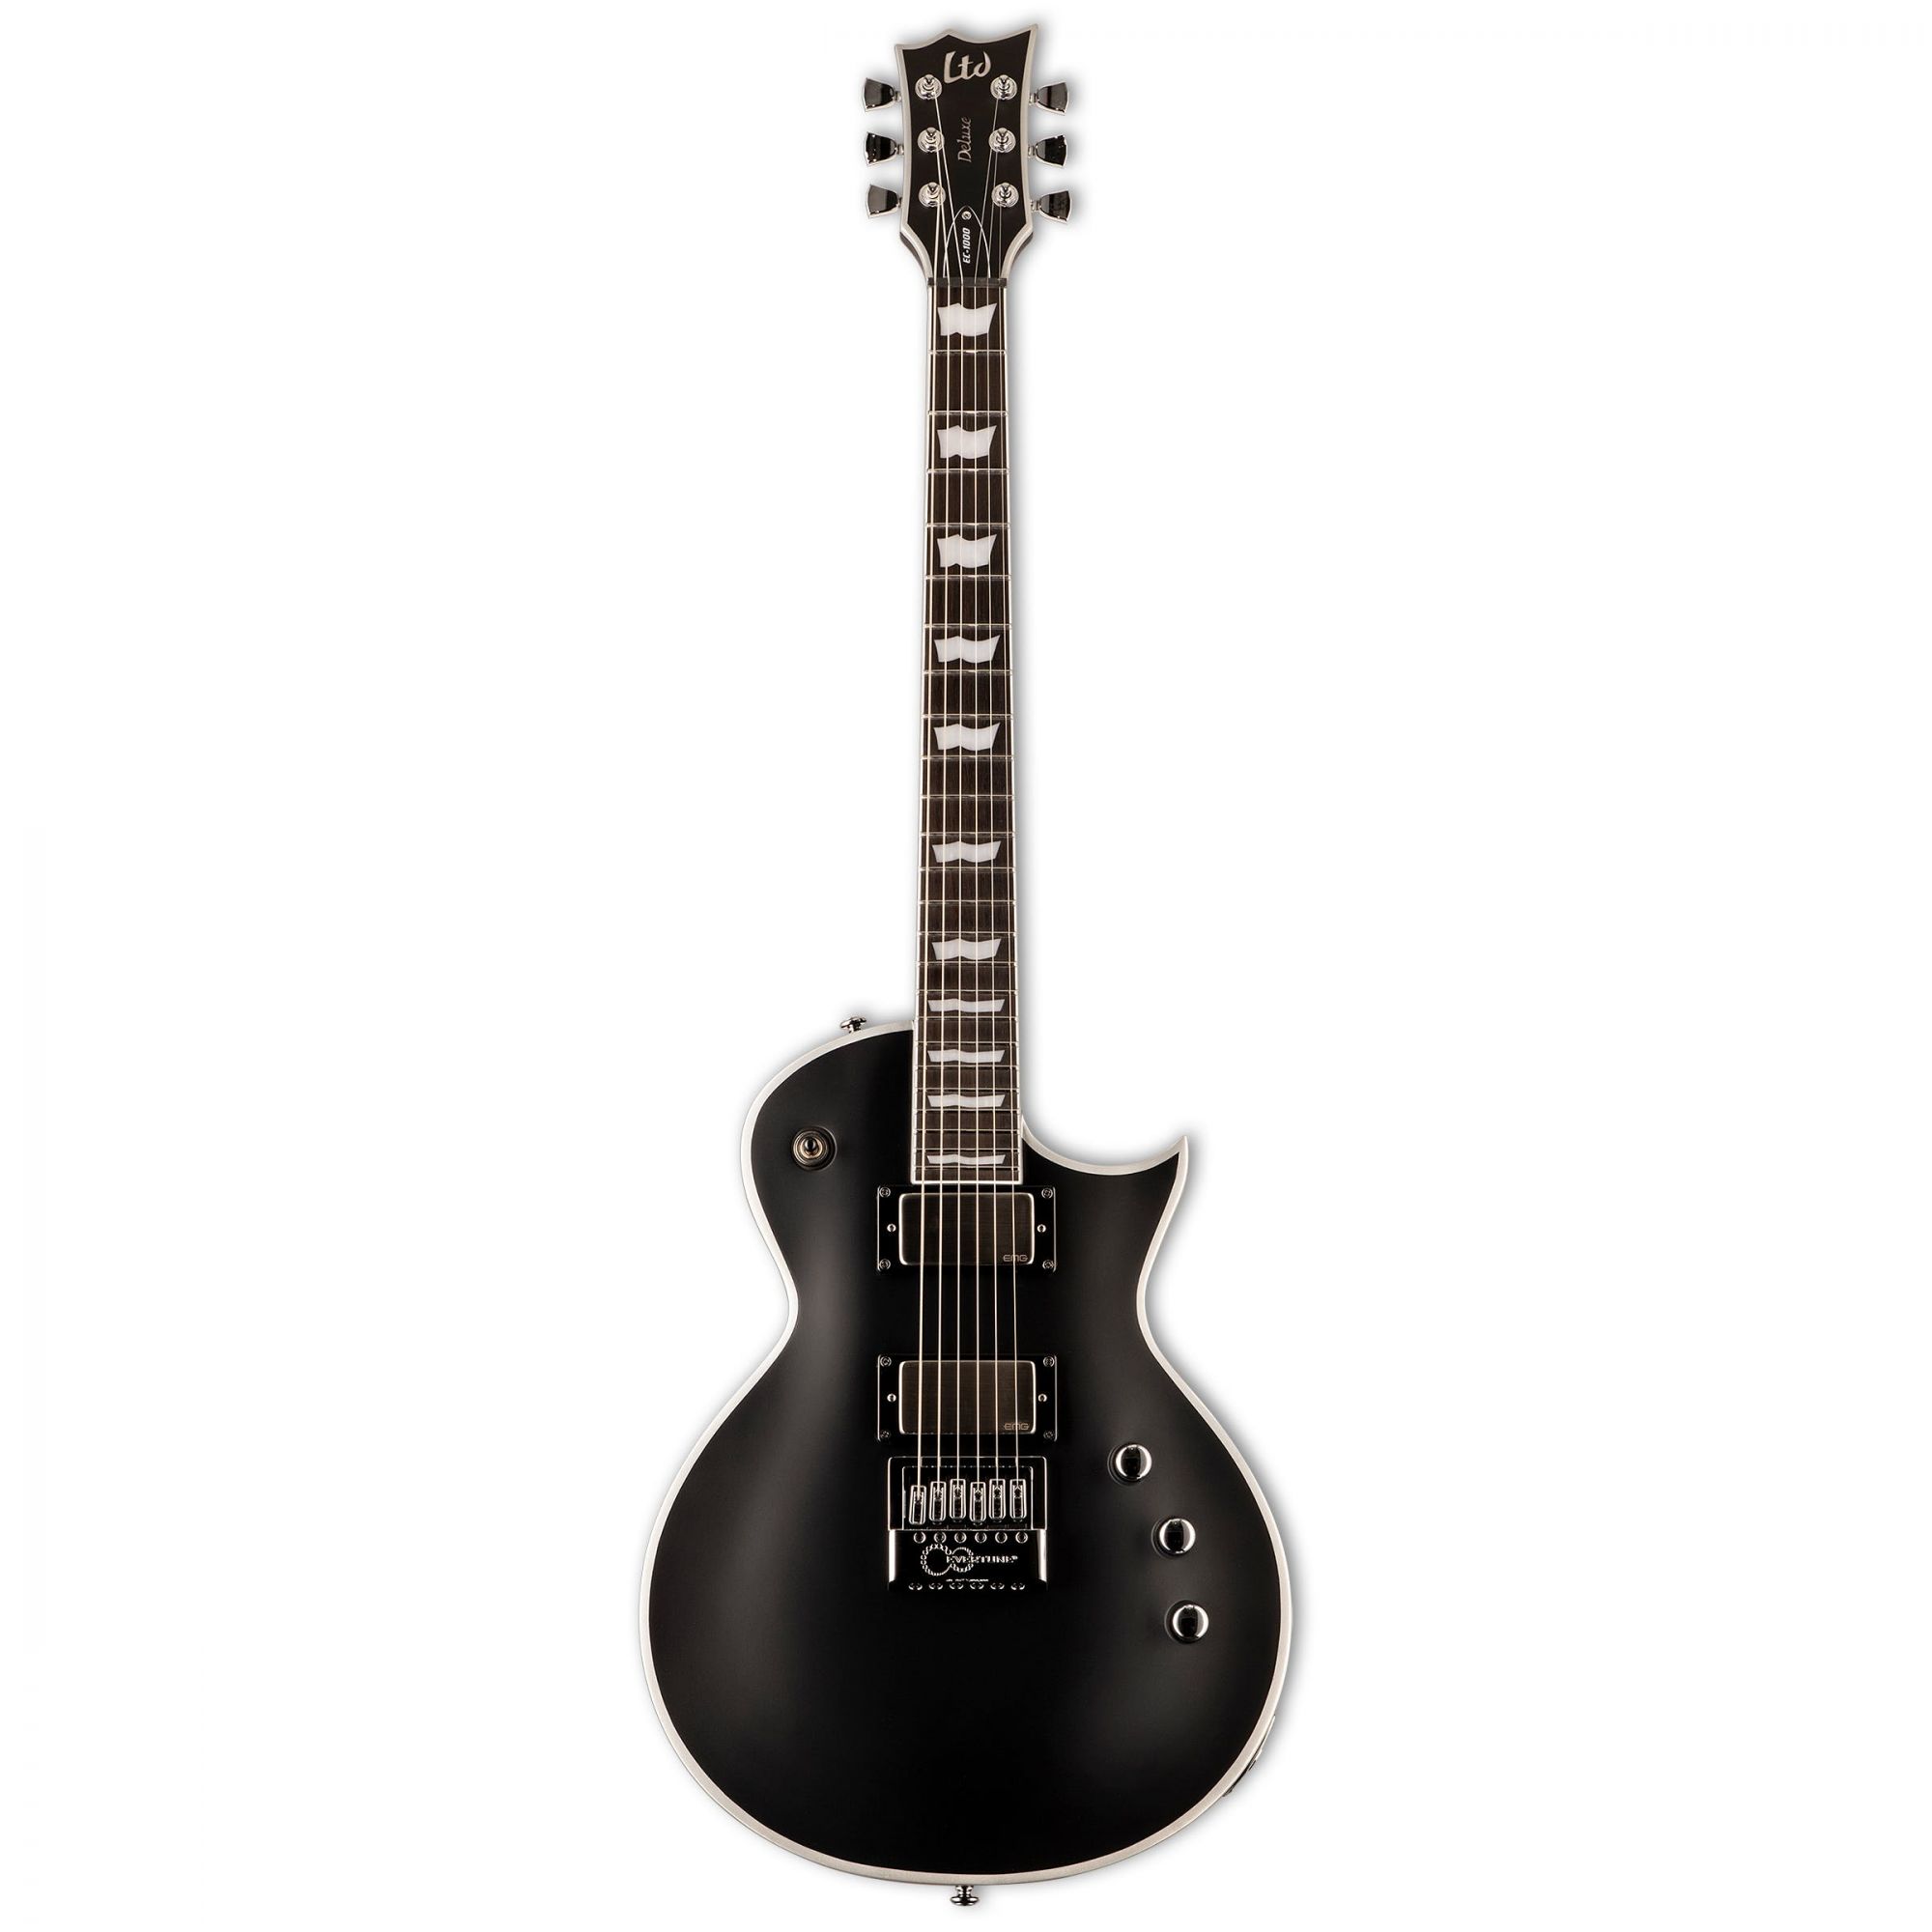 ESP LTD EC-1000 EverTune BB Electric Guitar in Black Satin